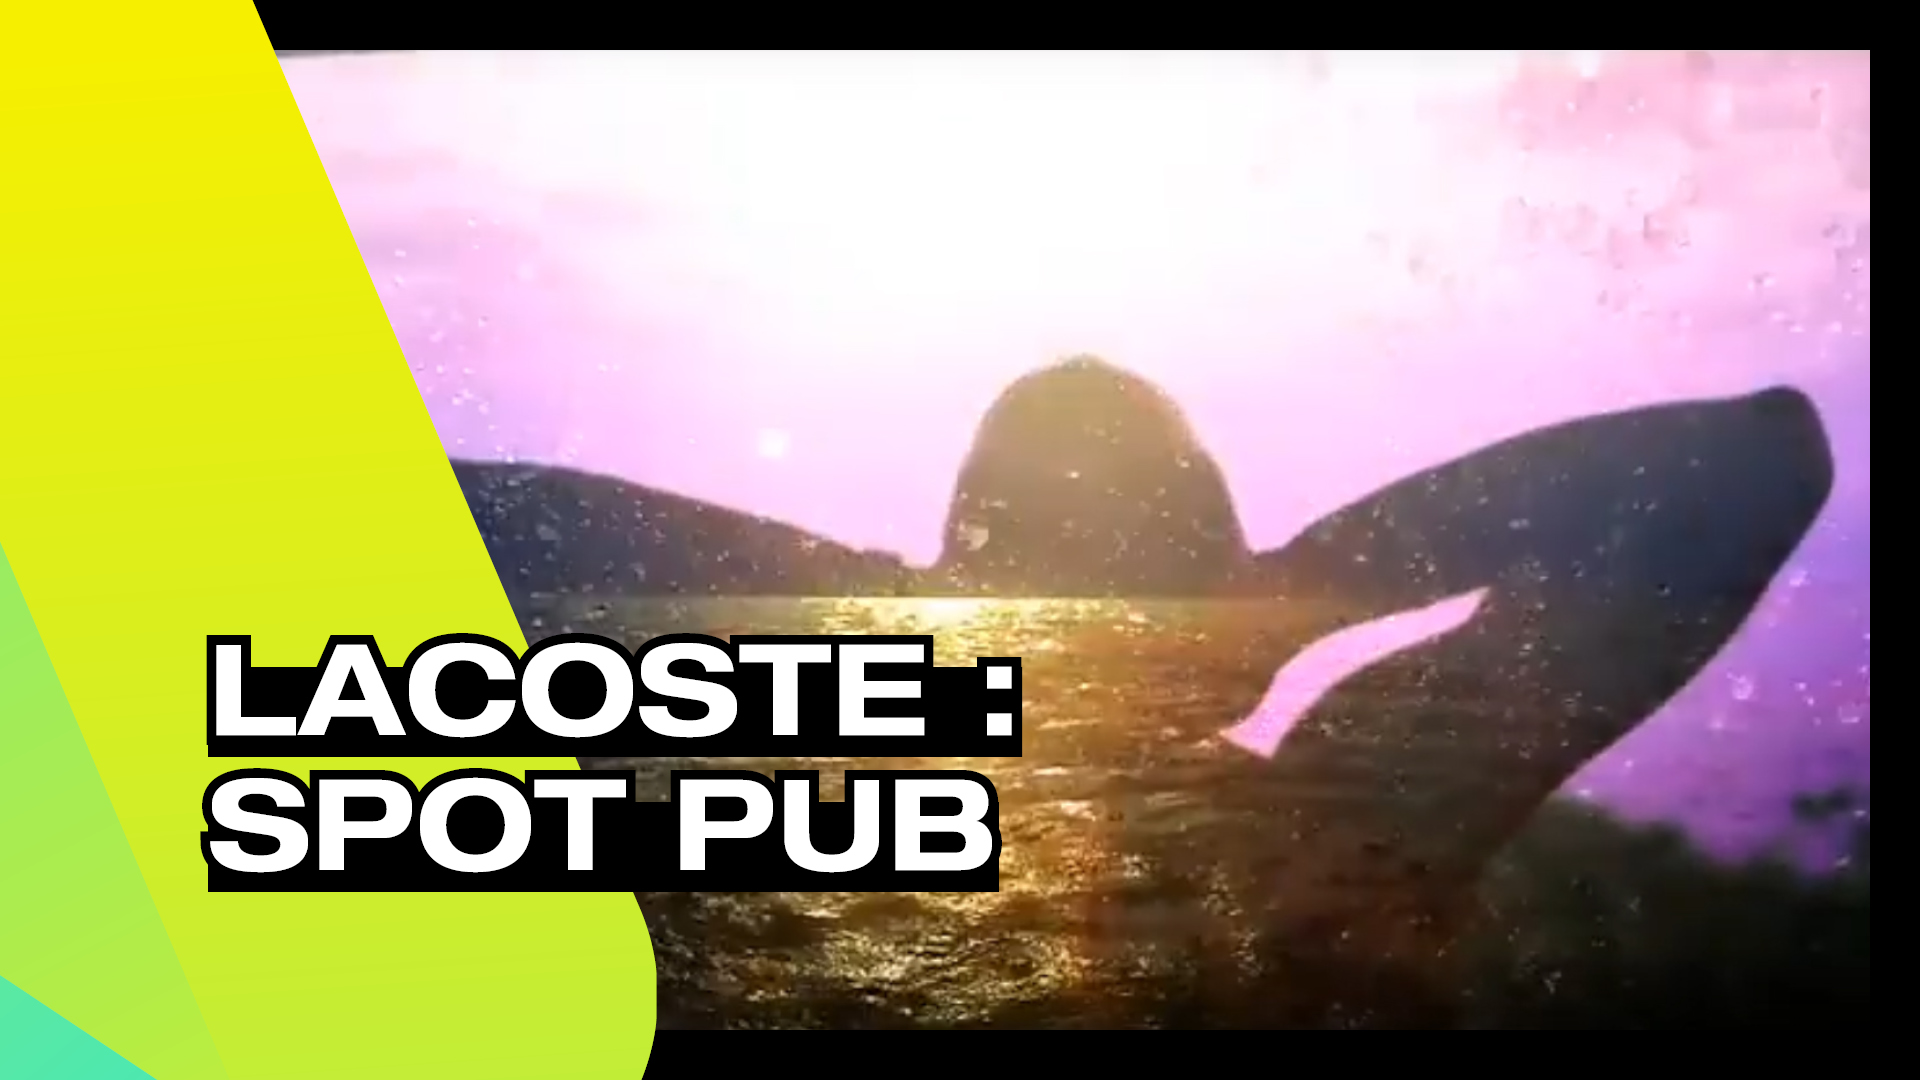 LACOSTE - Spot pub